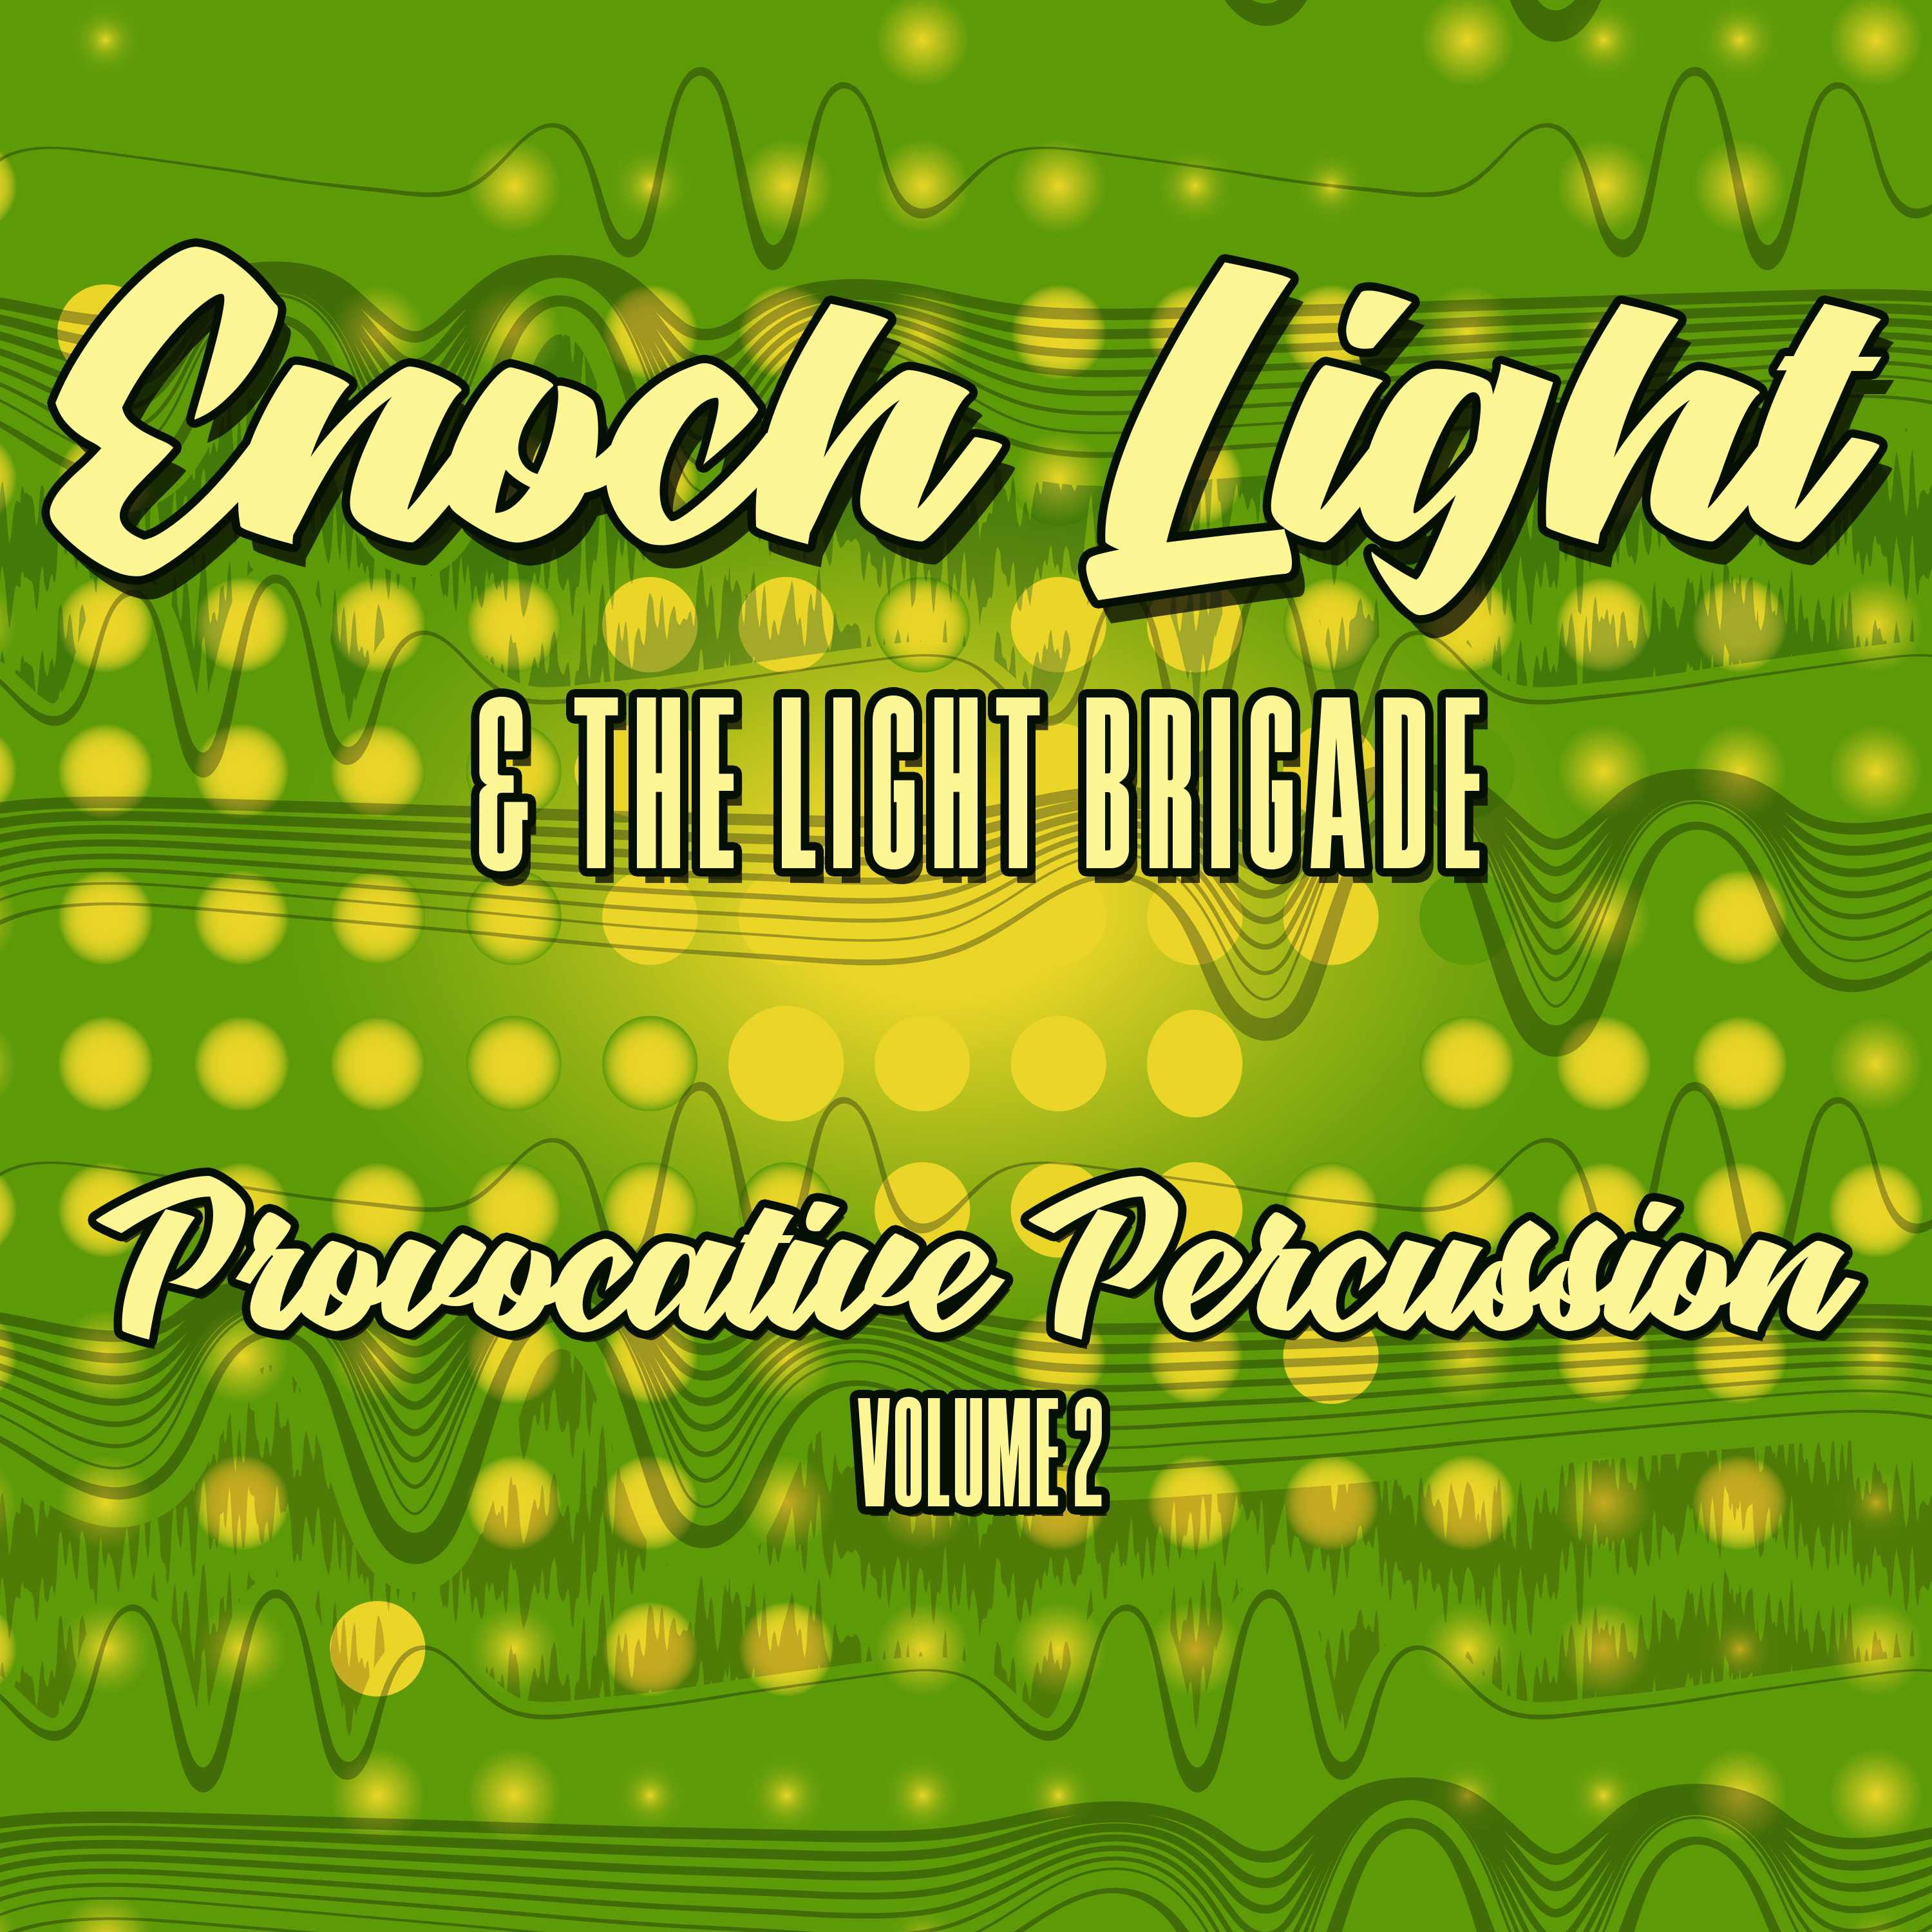 Provocative Percussion (Volume 2)